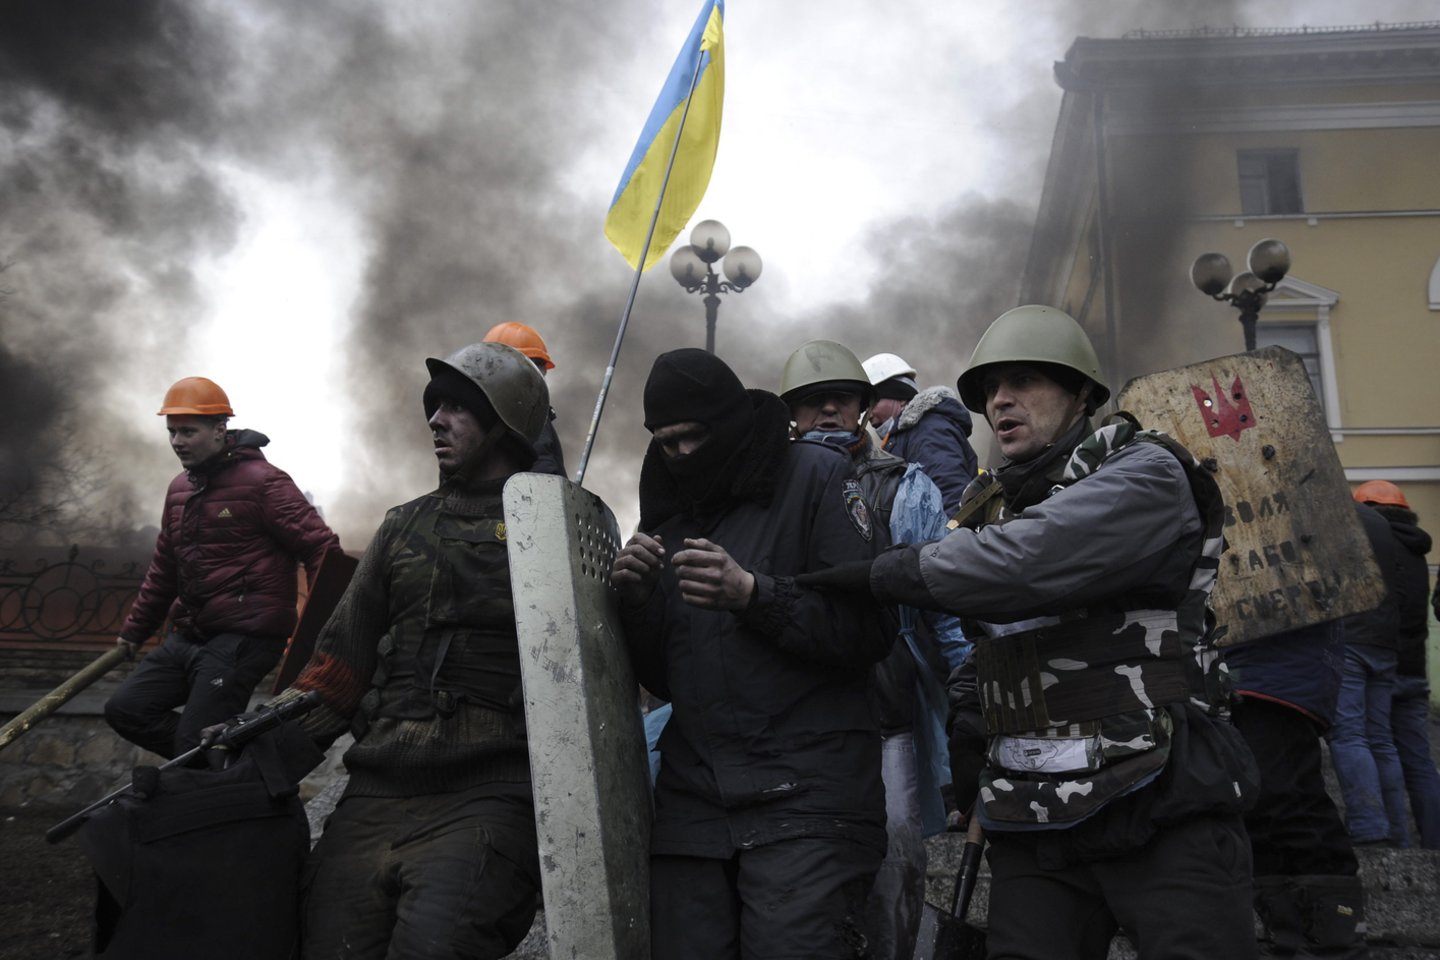  2014 m. Kijeve kilo proeuropietiška revoliucija, kuri pareikalavo mažiausiai 82 žmonių gyvybių. Buvo nuverstas prezidentas Viktoras Janukovyčius, tačiau Rusija aneksavo Krymą, o prorusiški separatistai pradėjo karinį konflikt Donbaso regione, kuris nėra išsprestas dar ir šiandien.<br>Reuters/Scanpix nuotr.